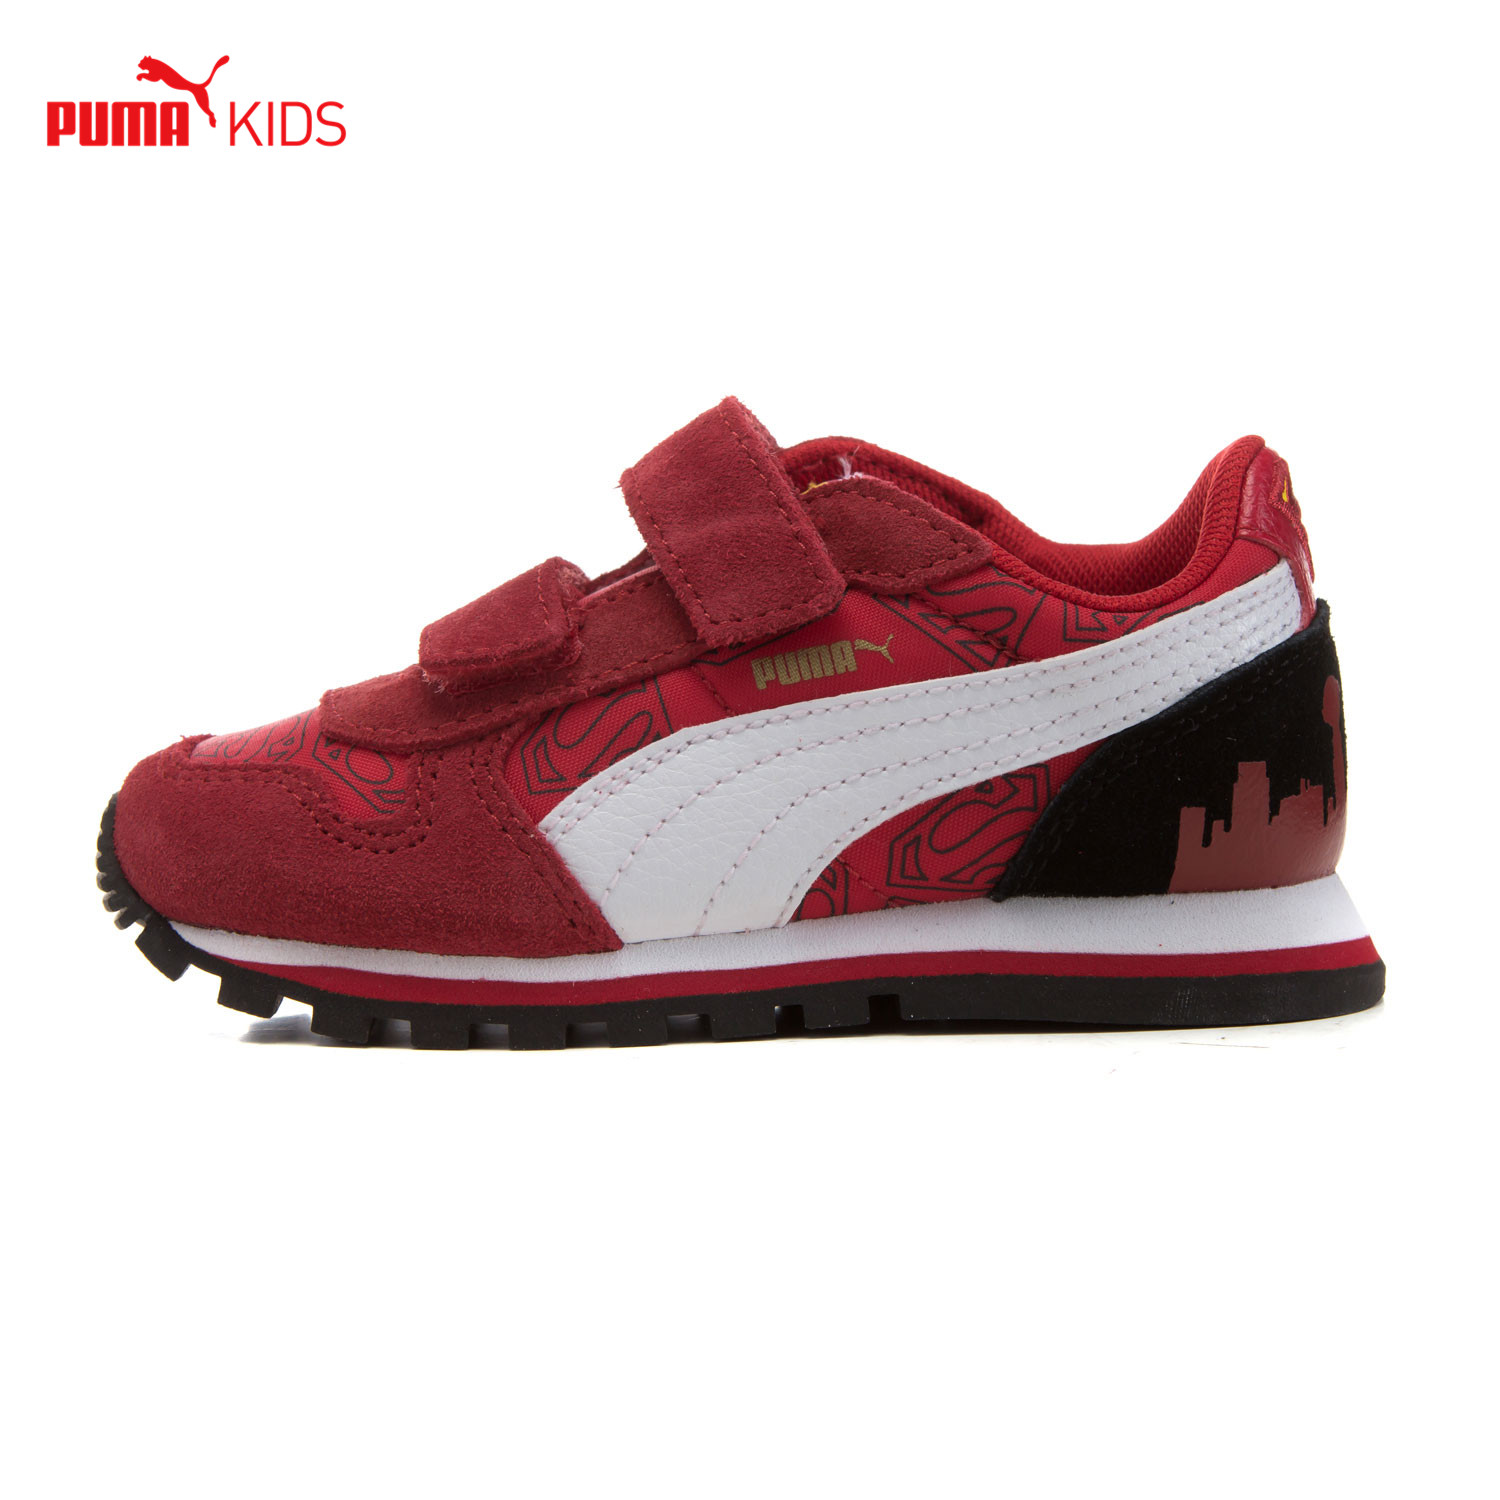 puma shoes 2016 kids